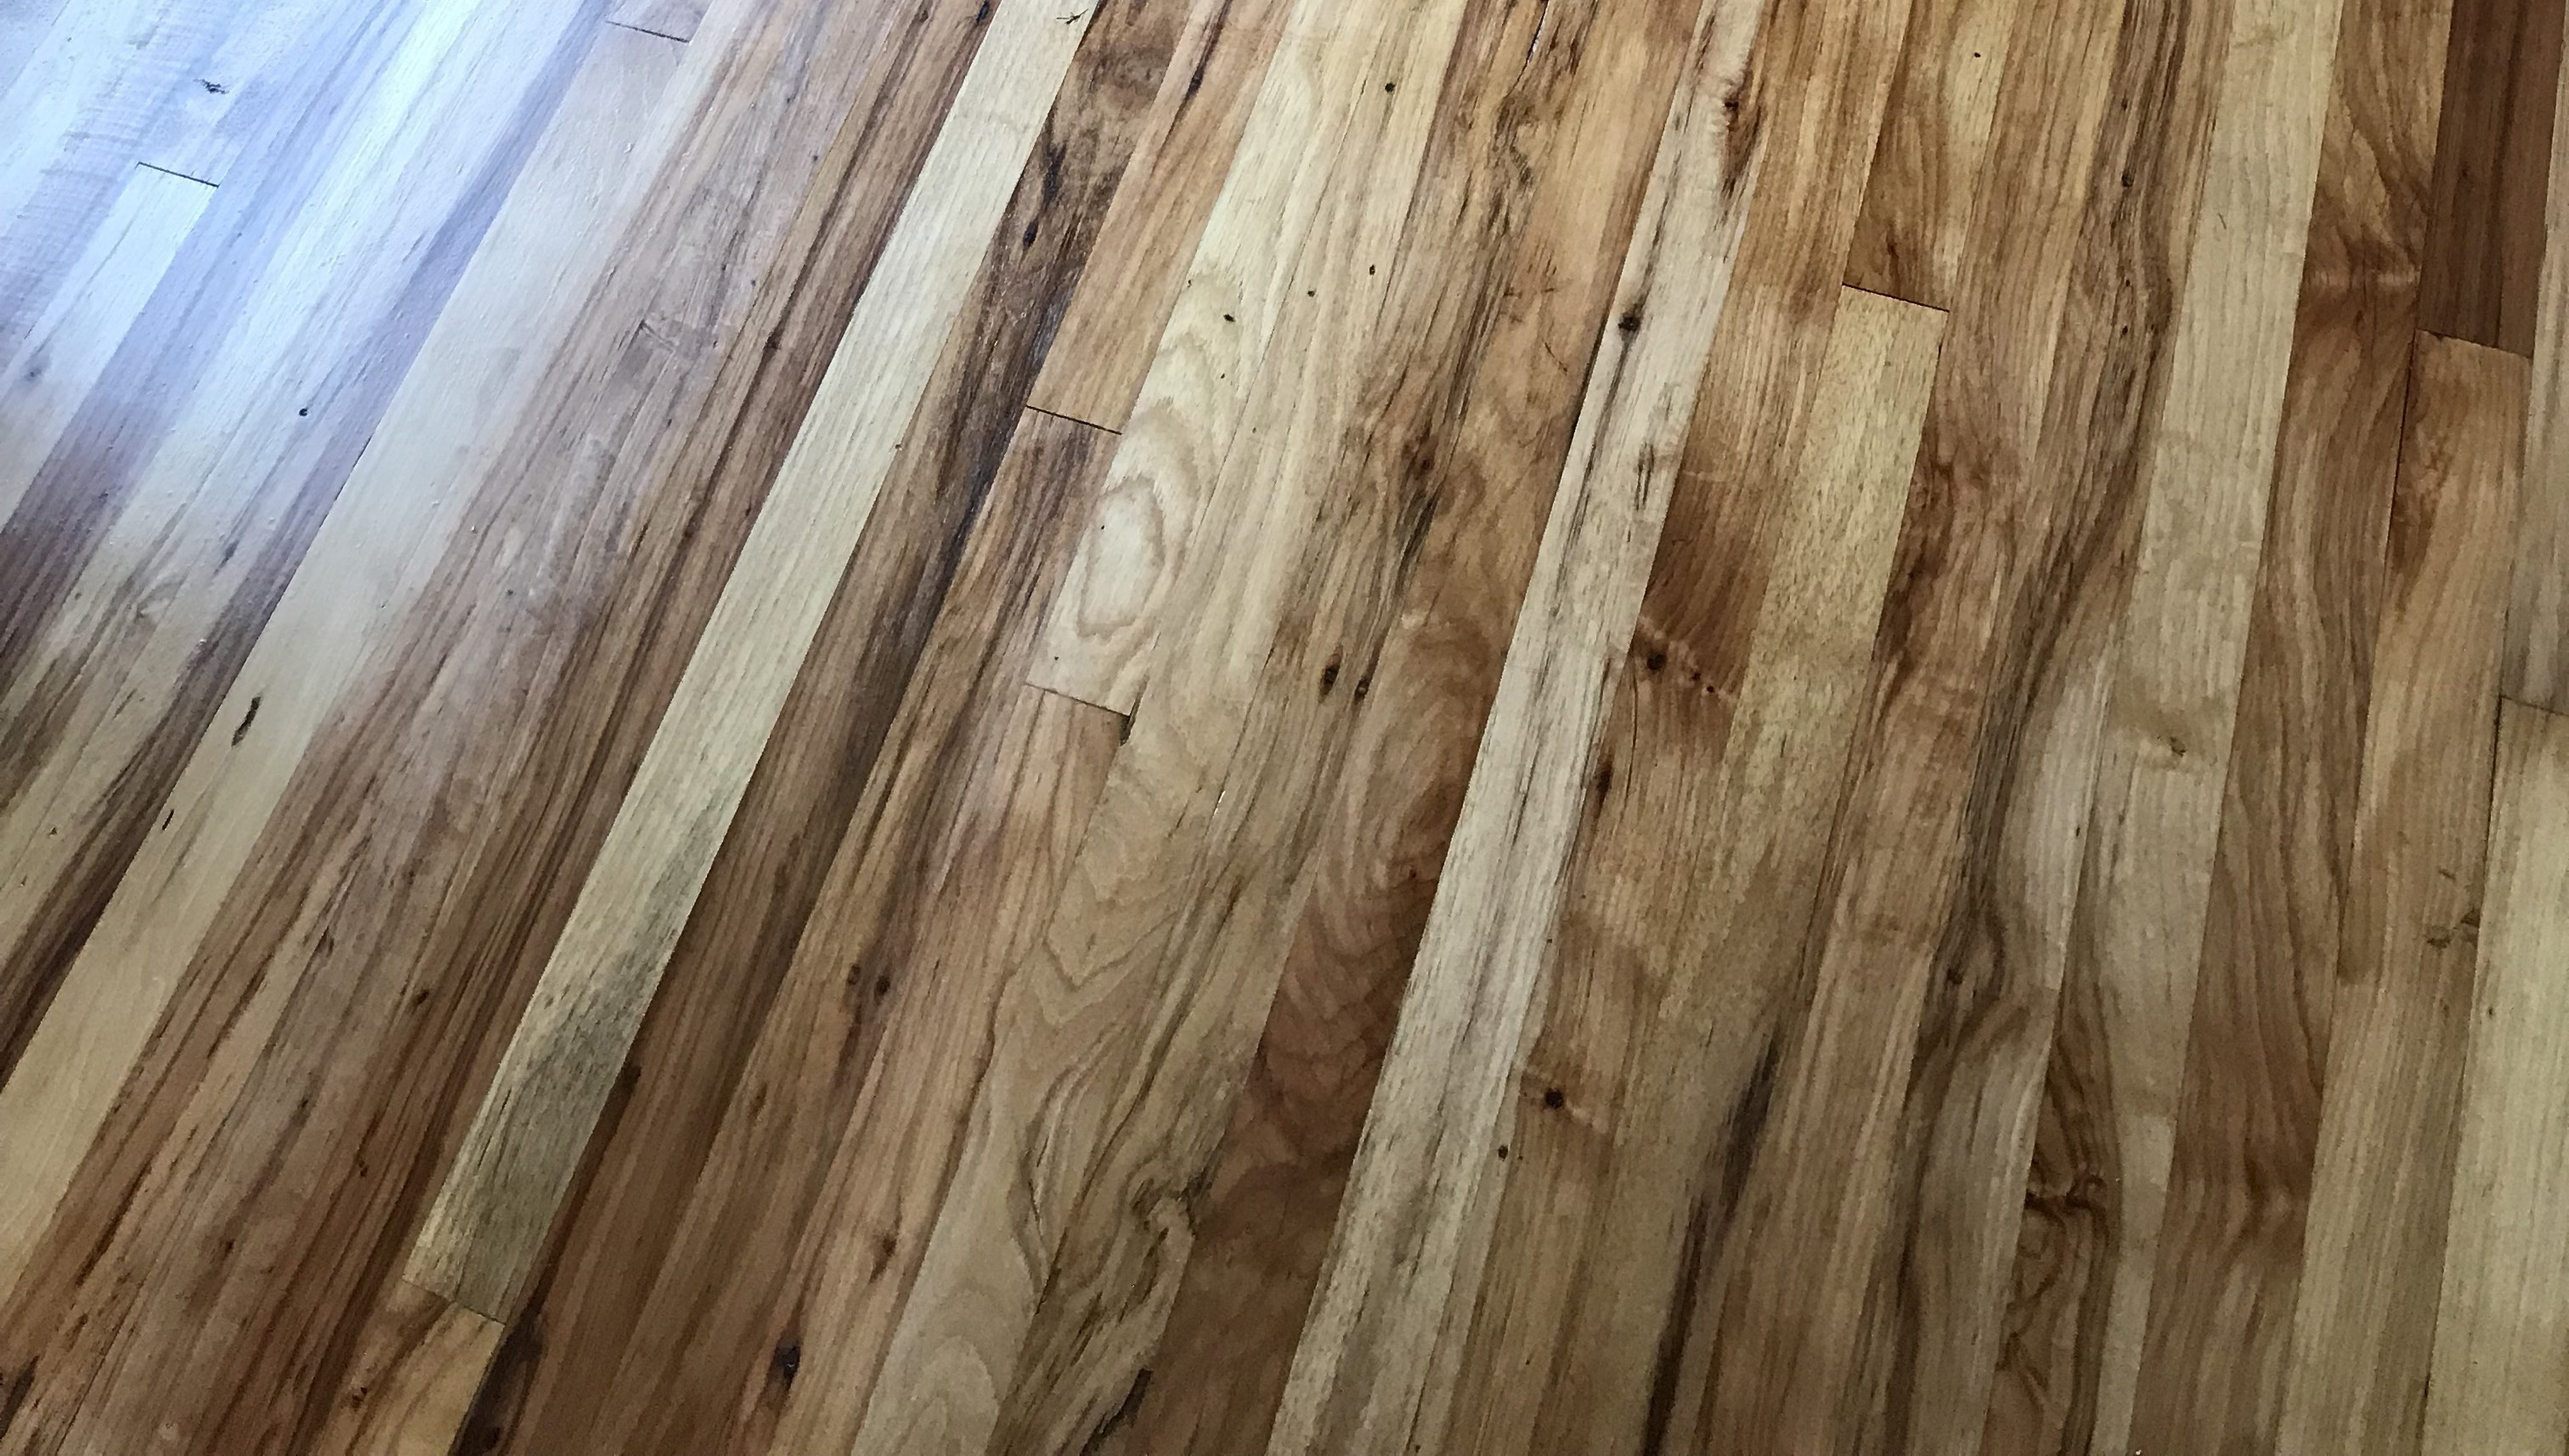 11 Lovely Hardwood Flooring Sq Ft Price 2024 free download hardwood flooring sq ft price of refinishing hardwood floors carlhaven made in refinishing hardwood floors